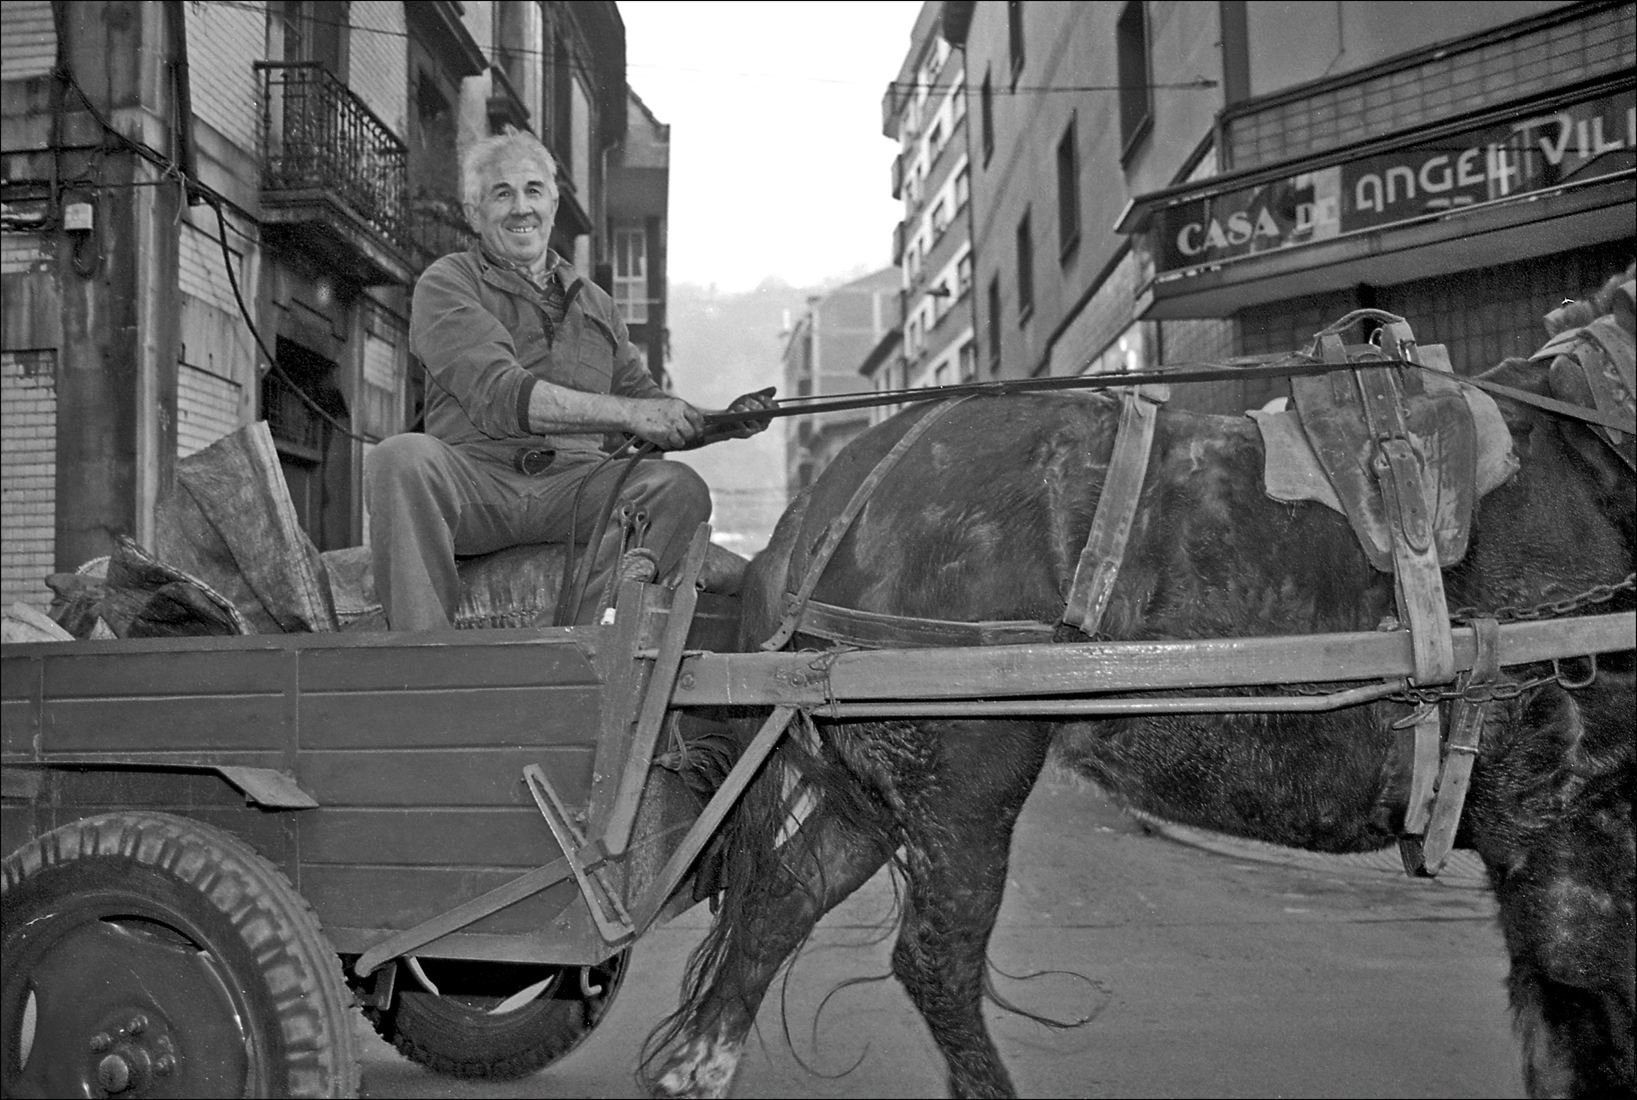 200 - Venta ambulante de Carbon. Langreo. Asturias 1995 - BN